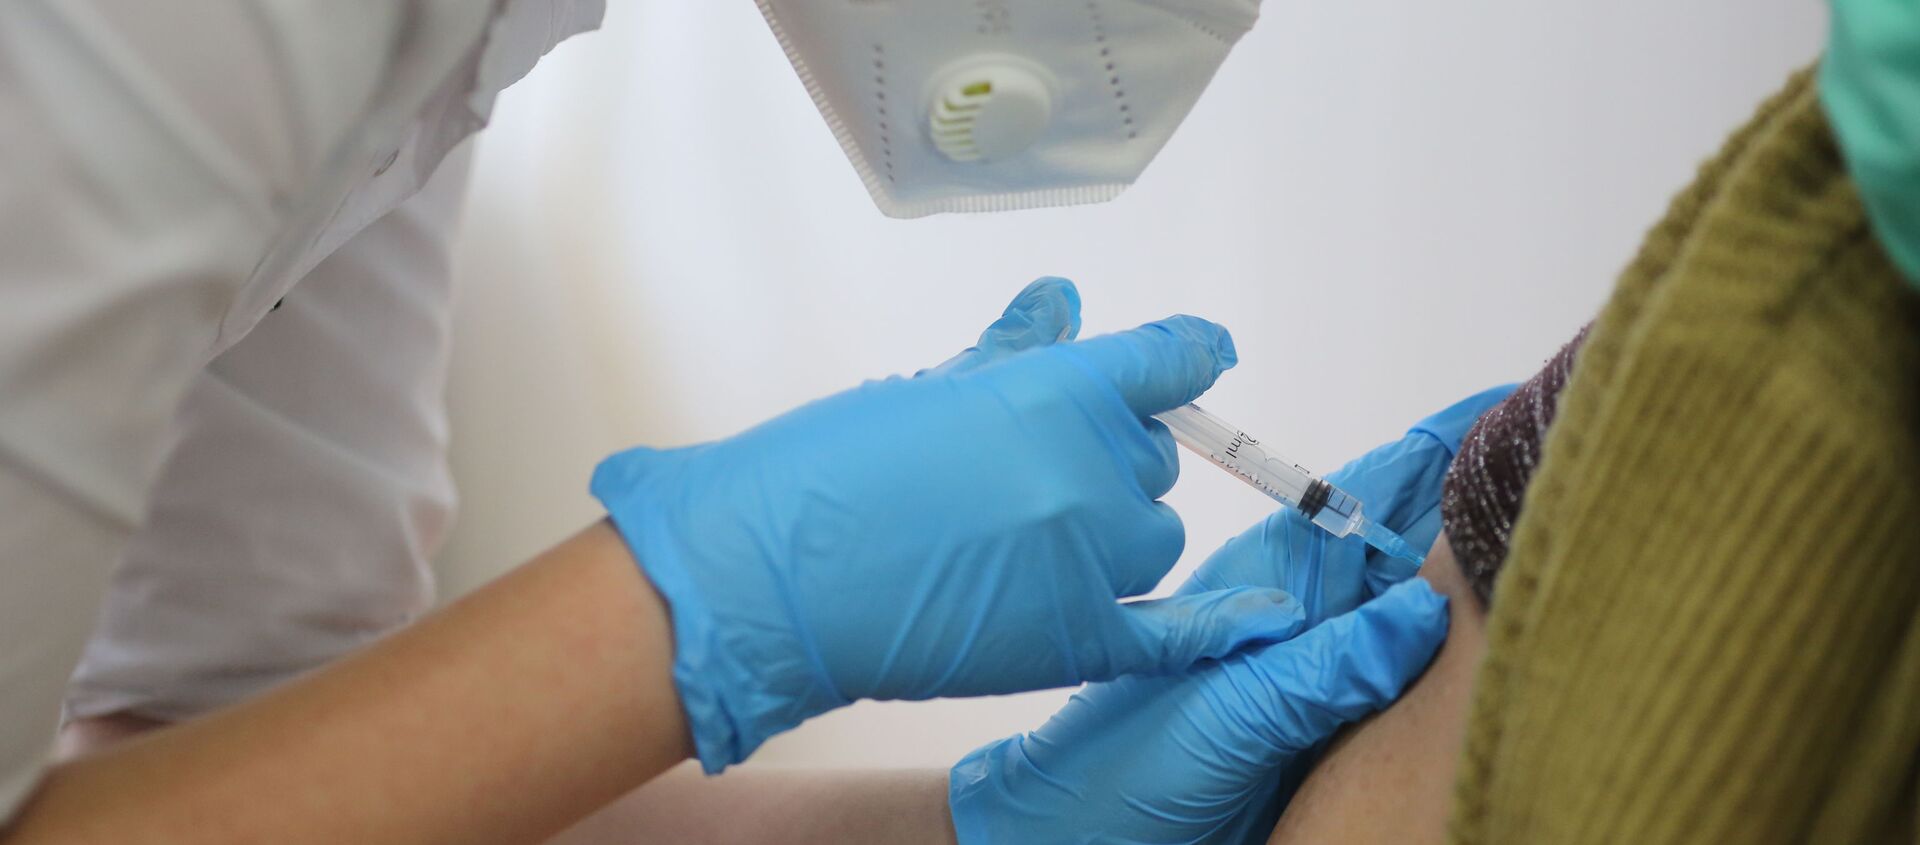 Медсестра делает прививку пациенту от коронавируса вакциной Спутник-V - Sputnik Беларусь, 1920, 11.02.2021